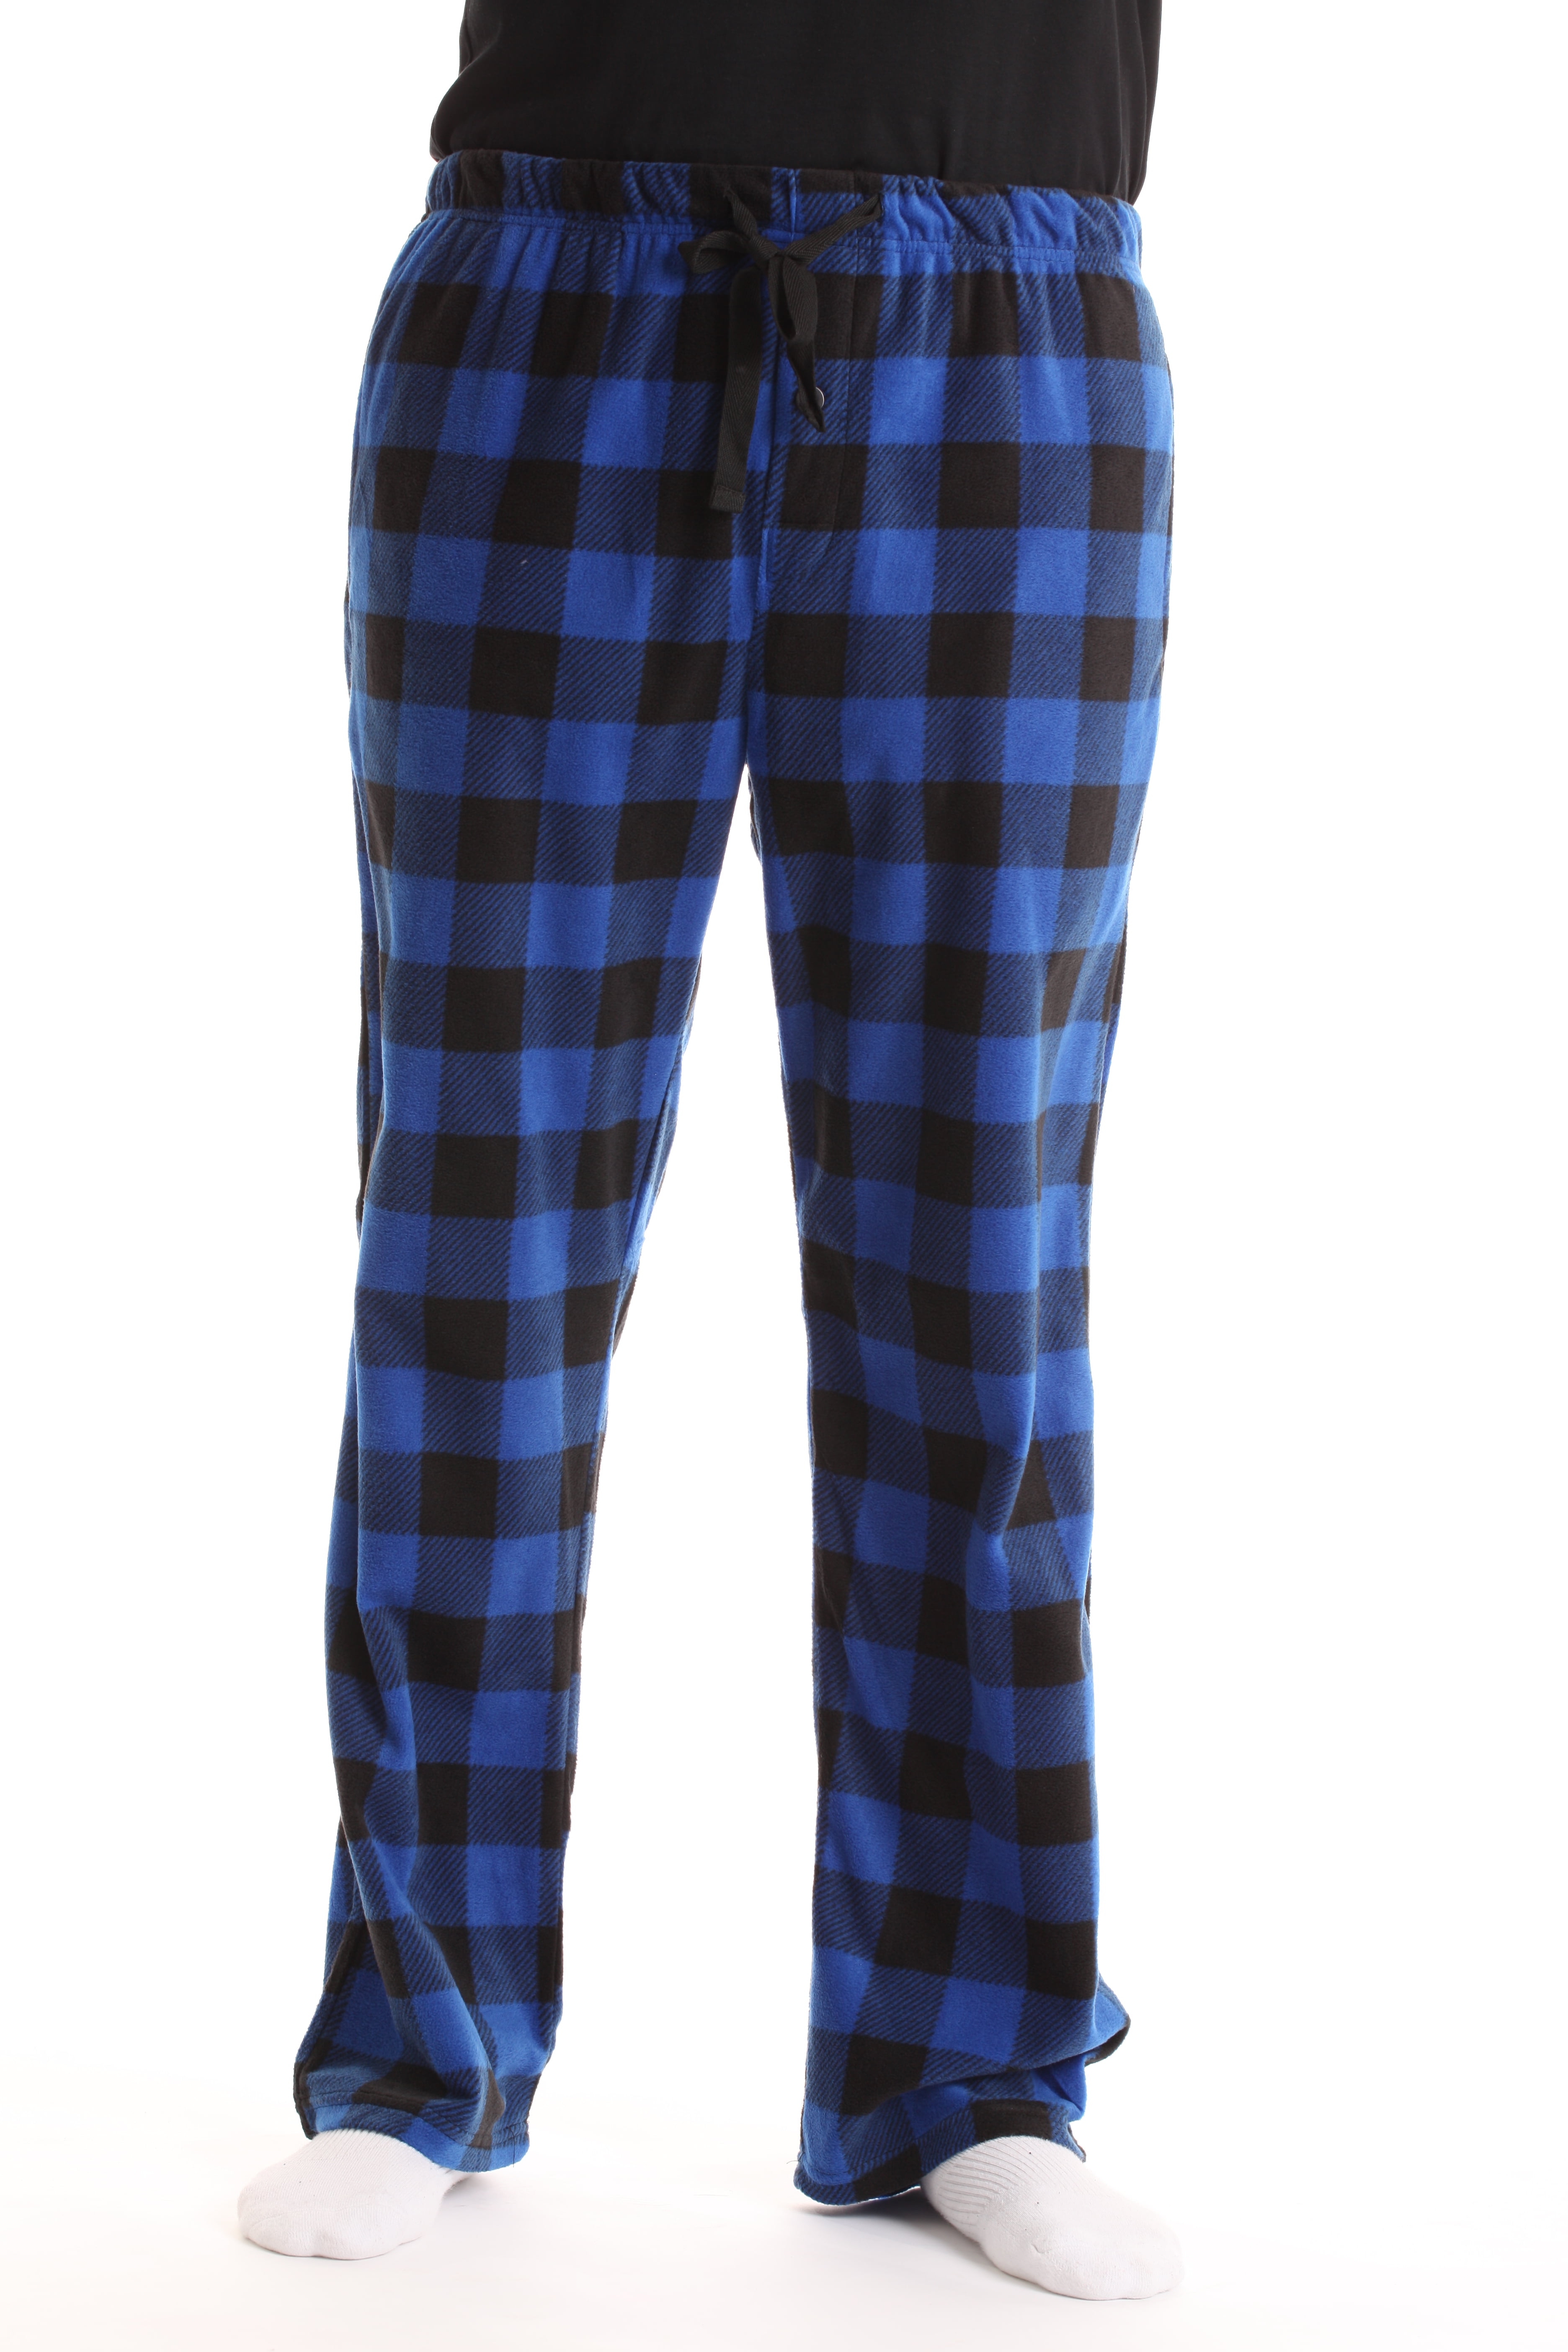 Men's Super Cozy PJ Buffalo Plaid Micro Fleece Pajama Pants-1235